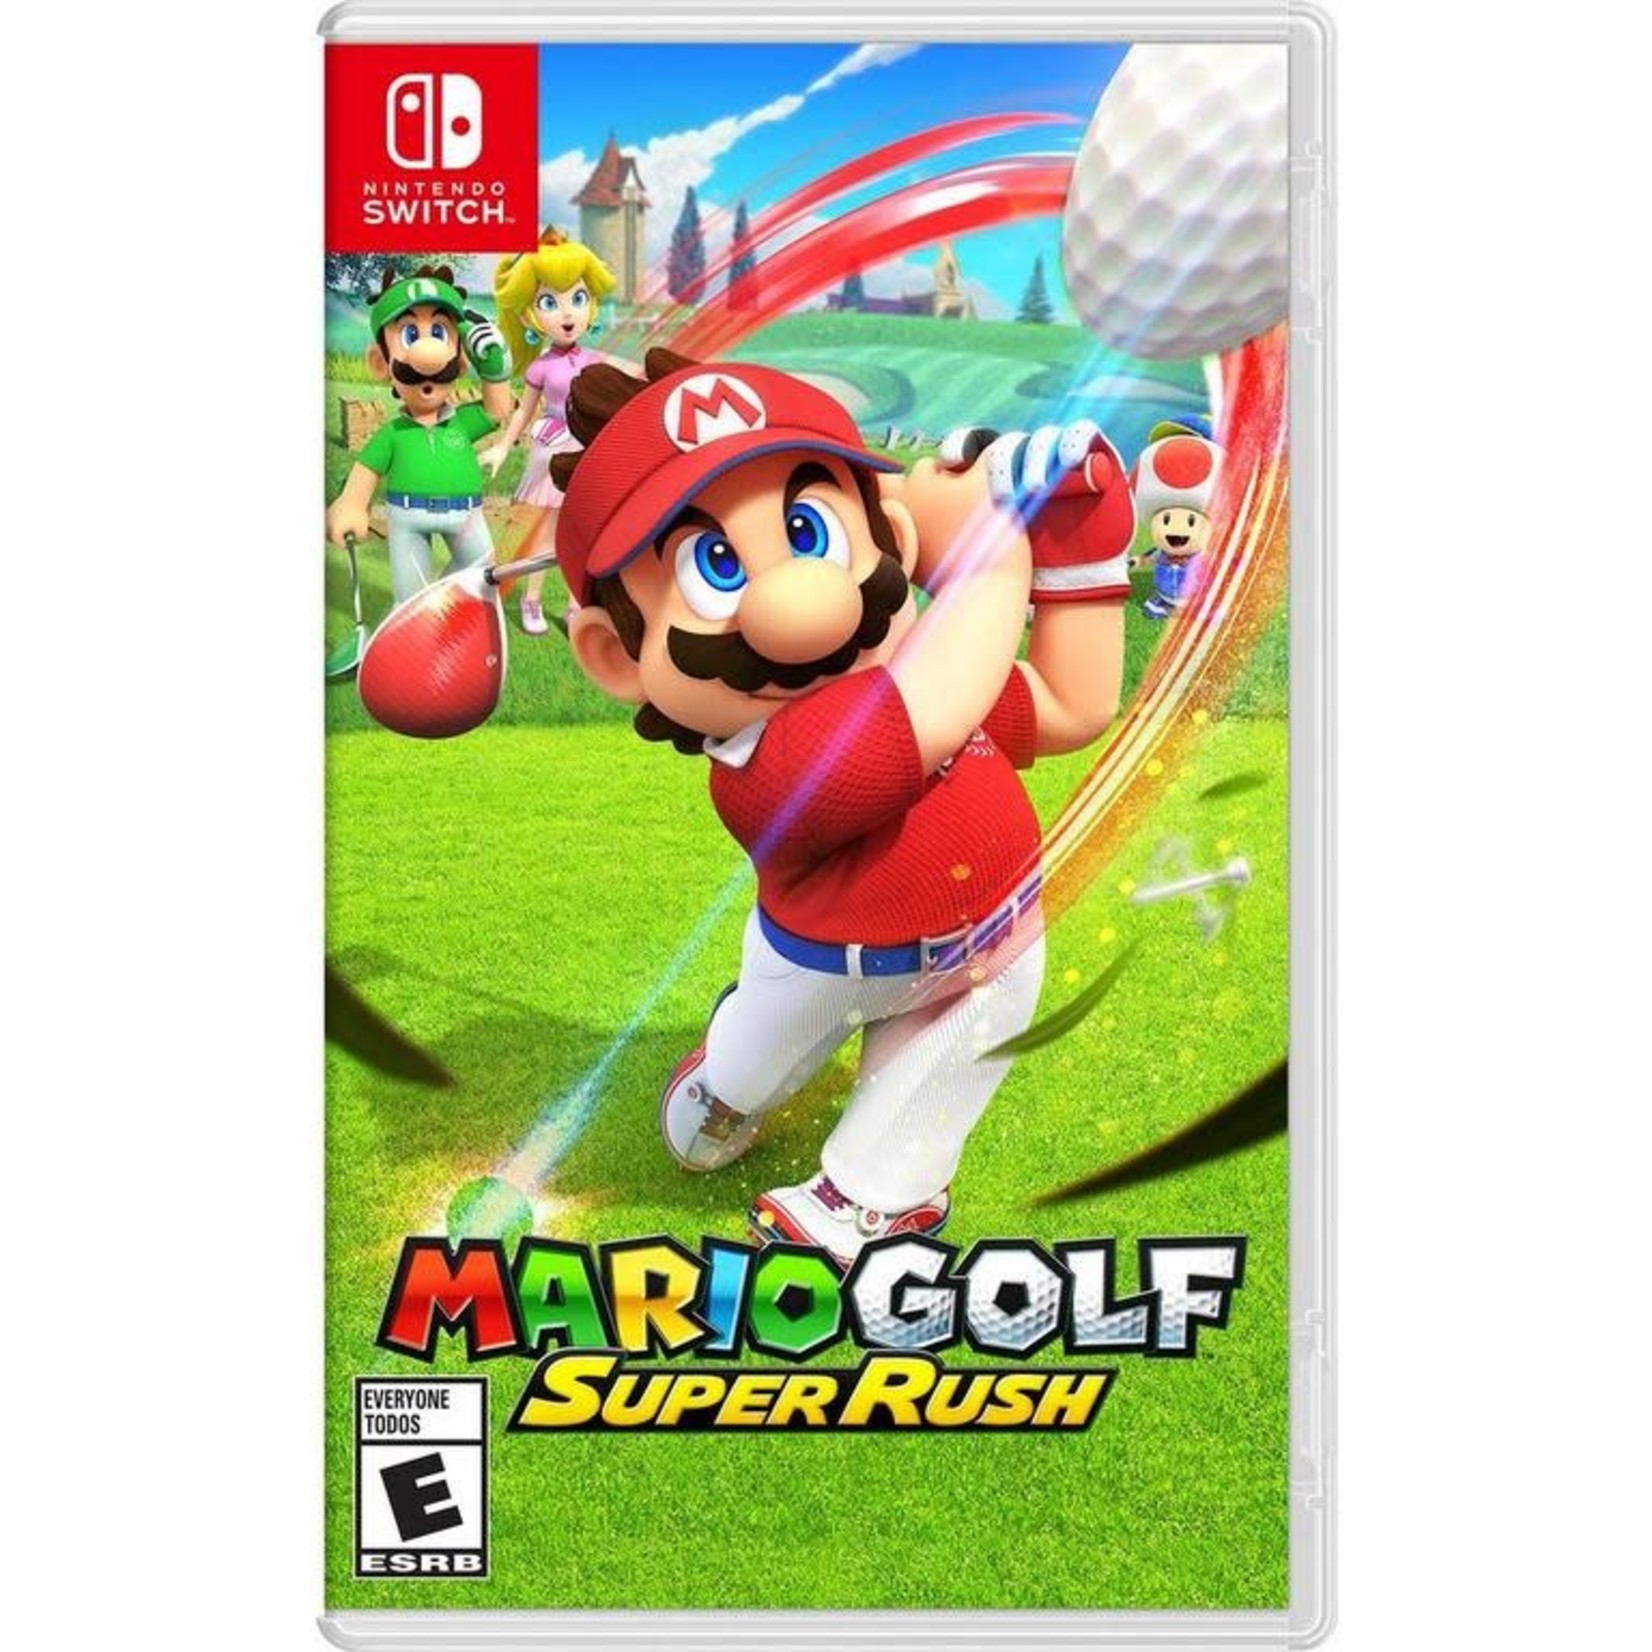 SWITCHU-Mario Golf: Super Rush